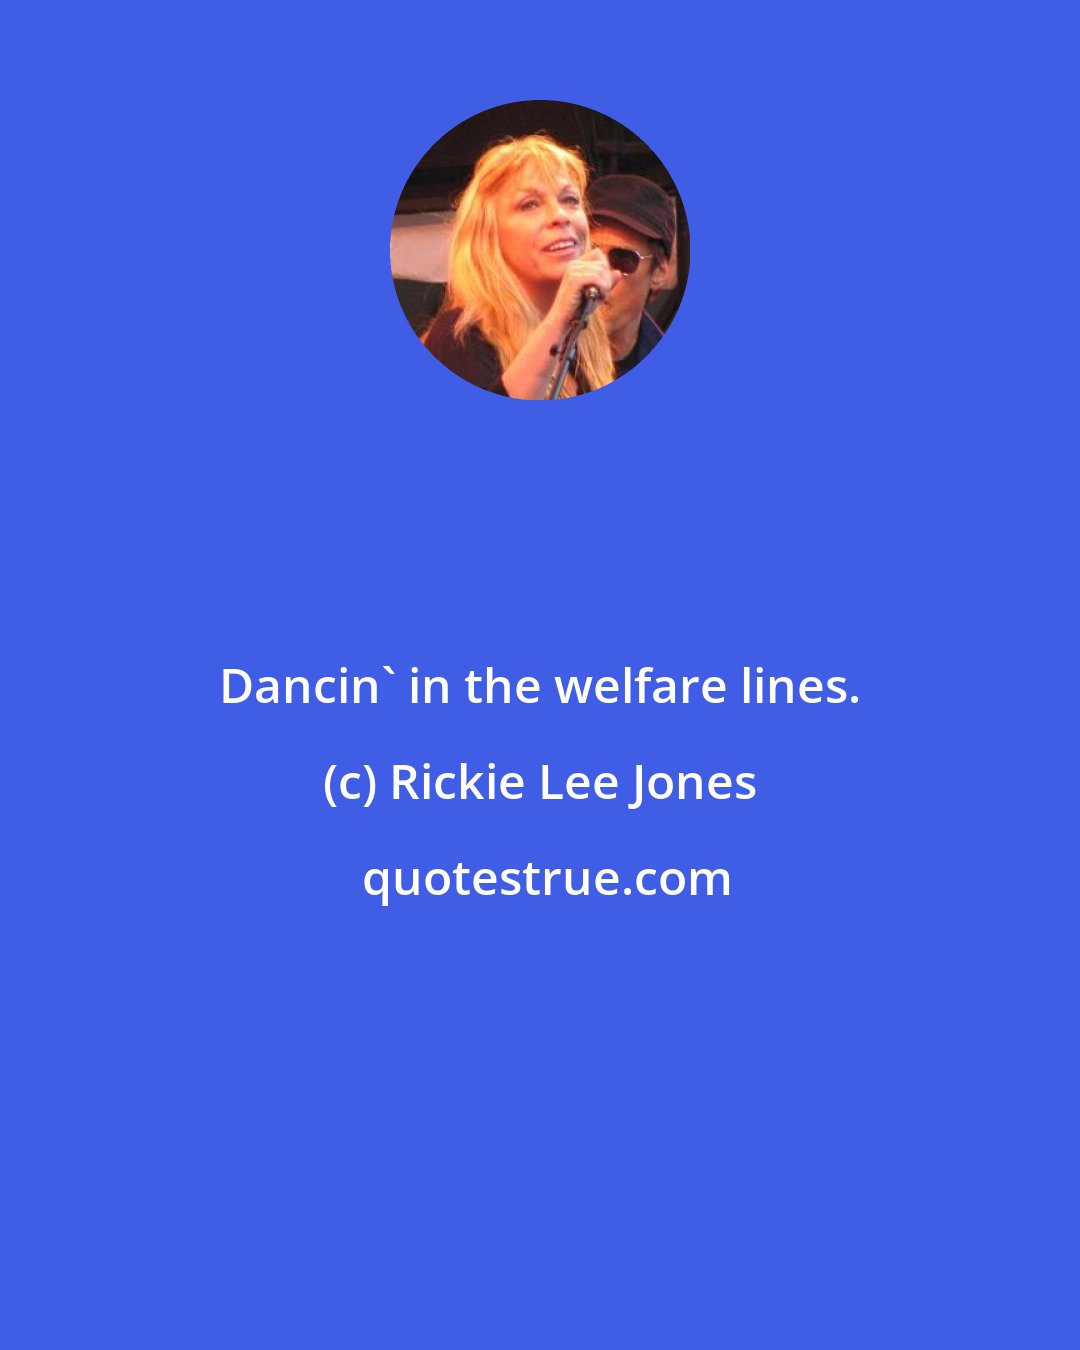 Rickie Lee Jones: Dancin' in the welfare lines.